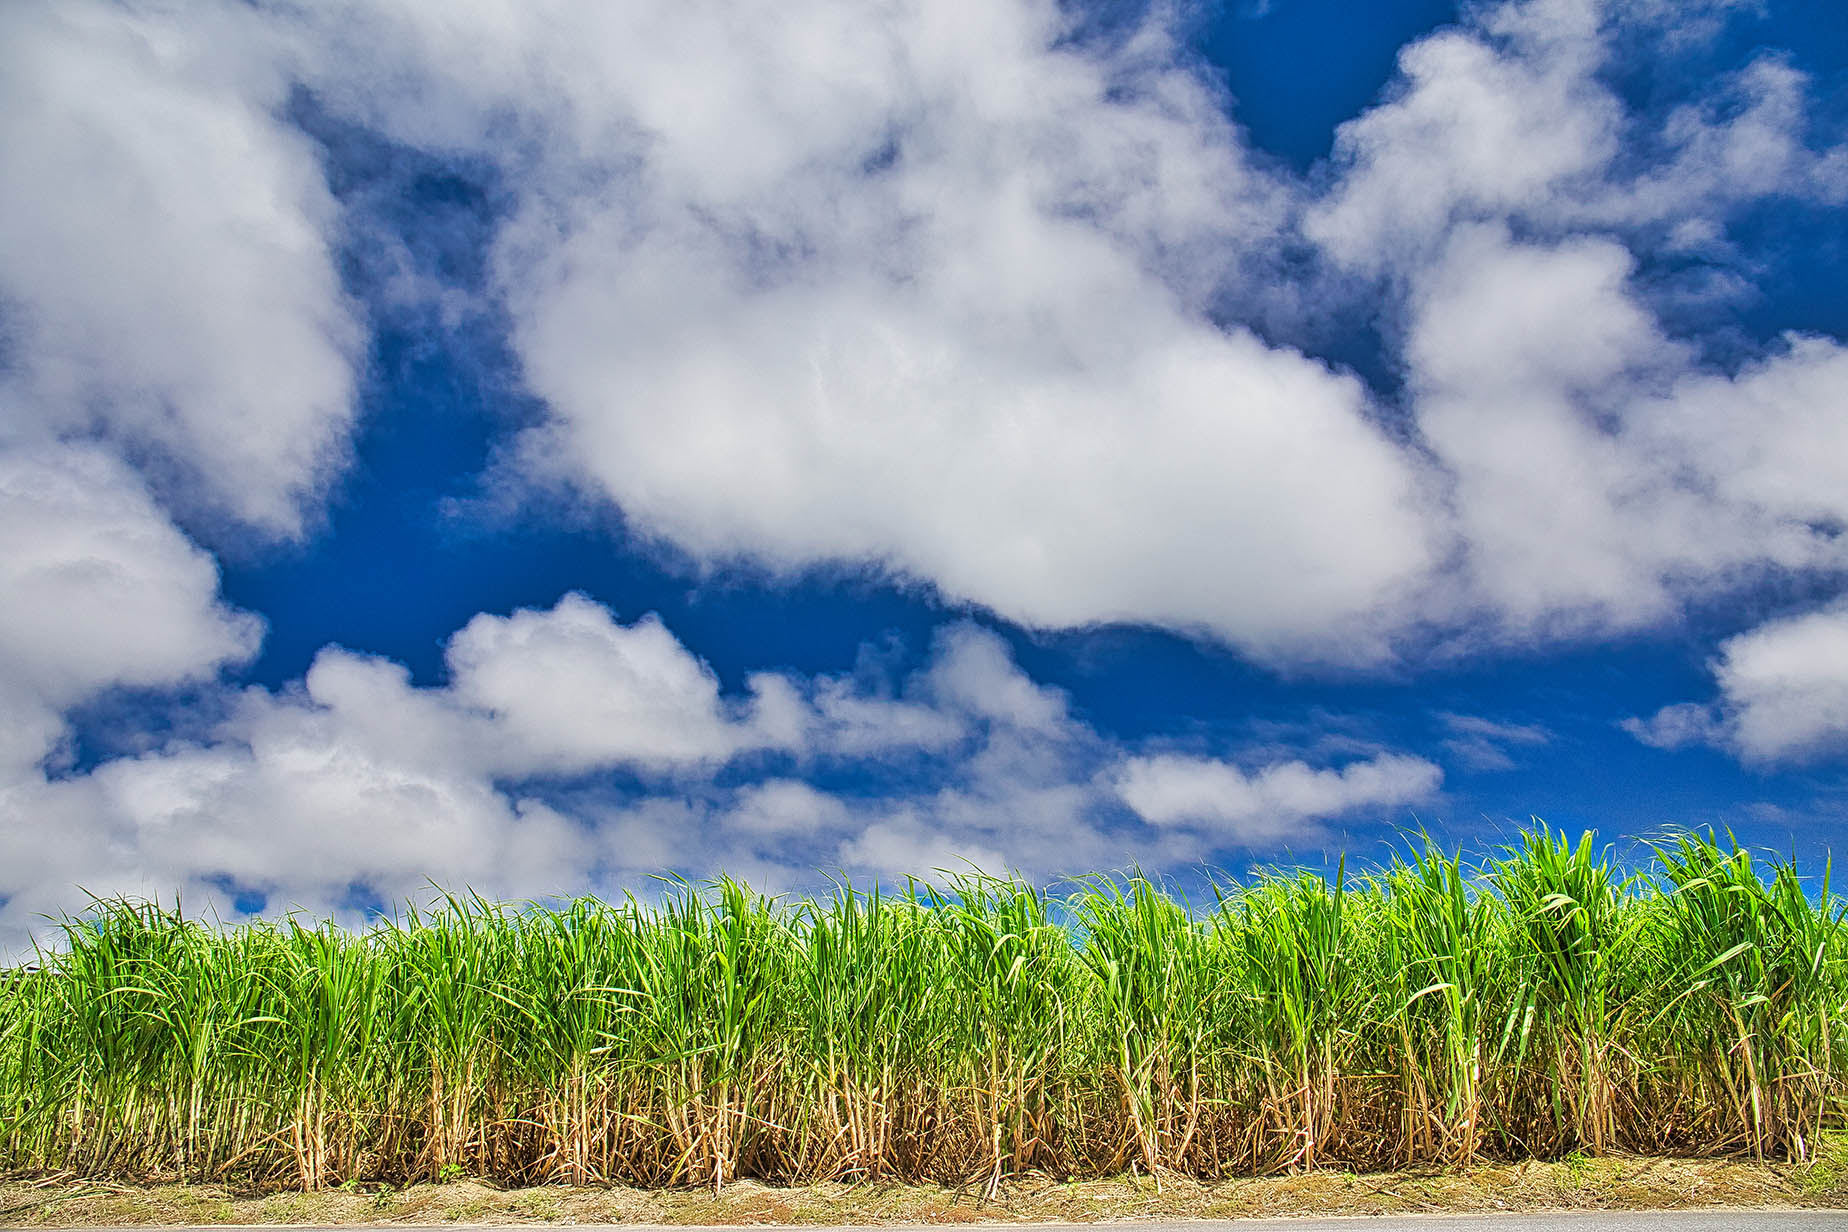 itoman nanjo sugarcane fields